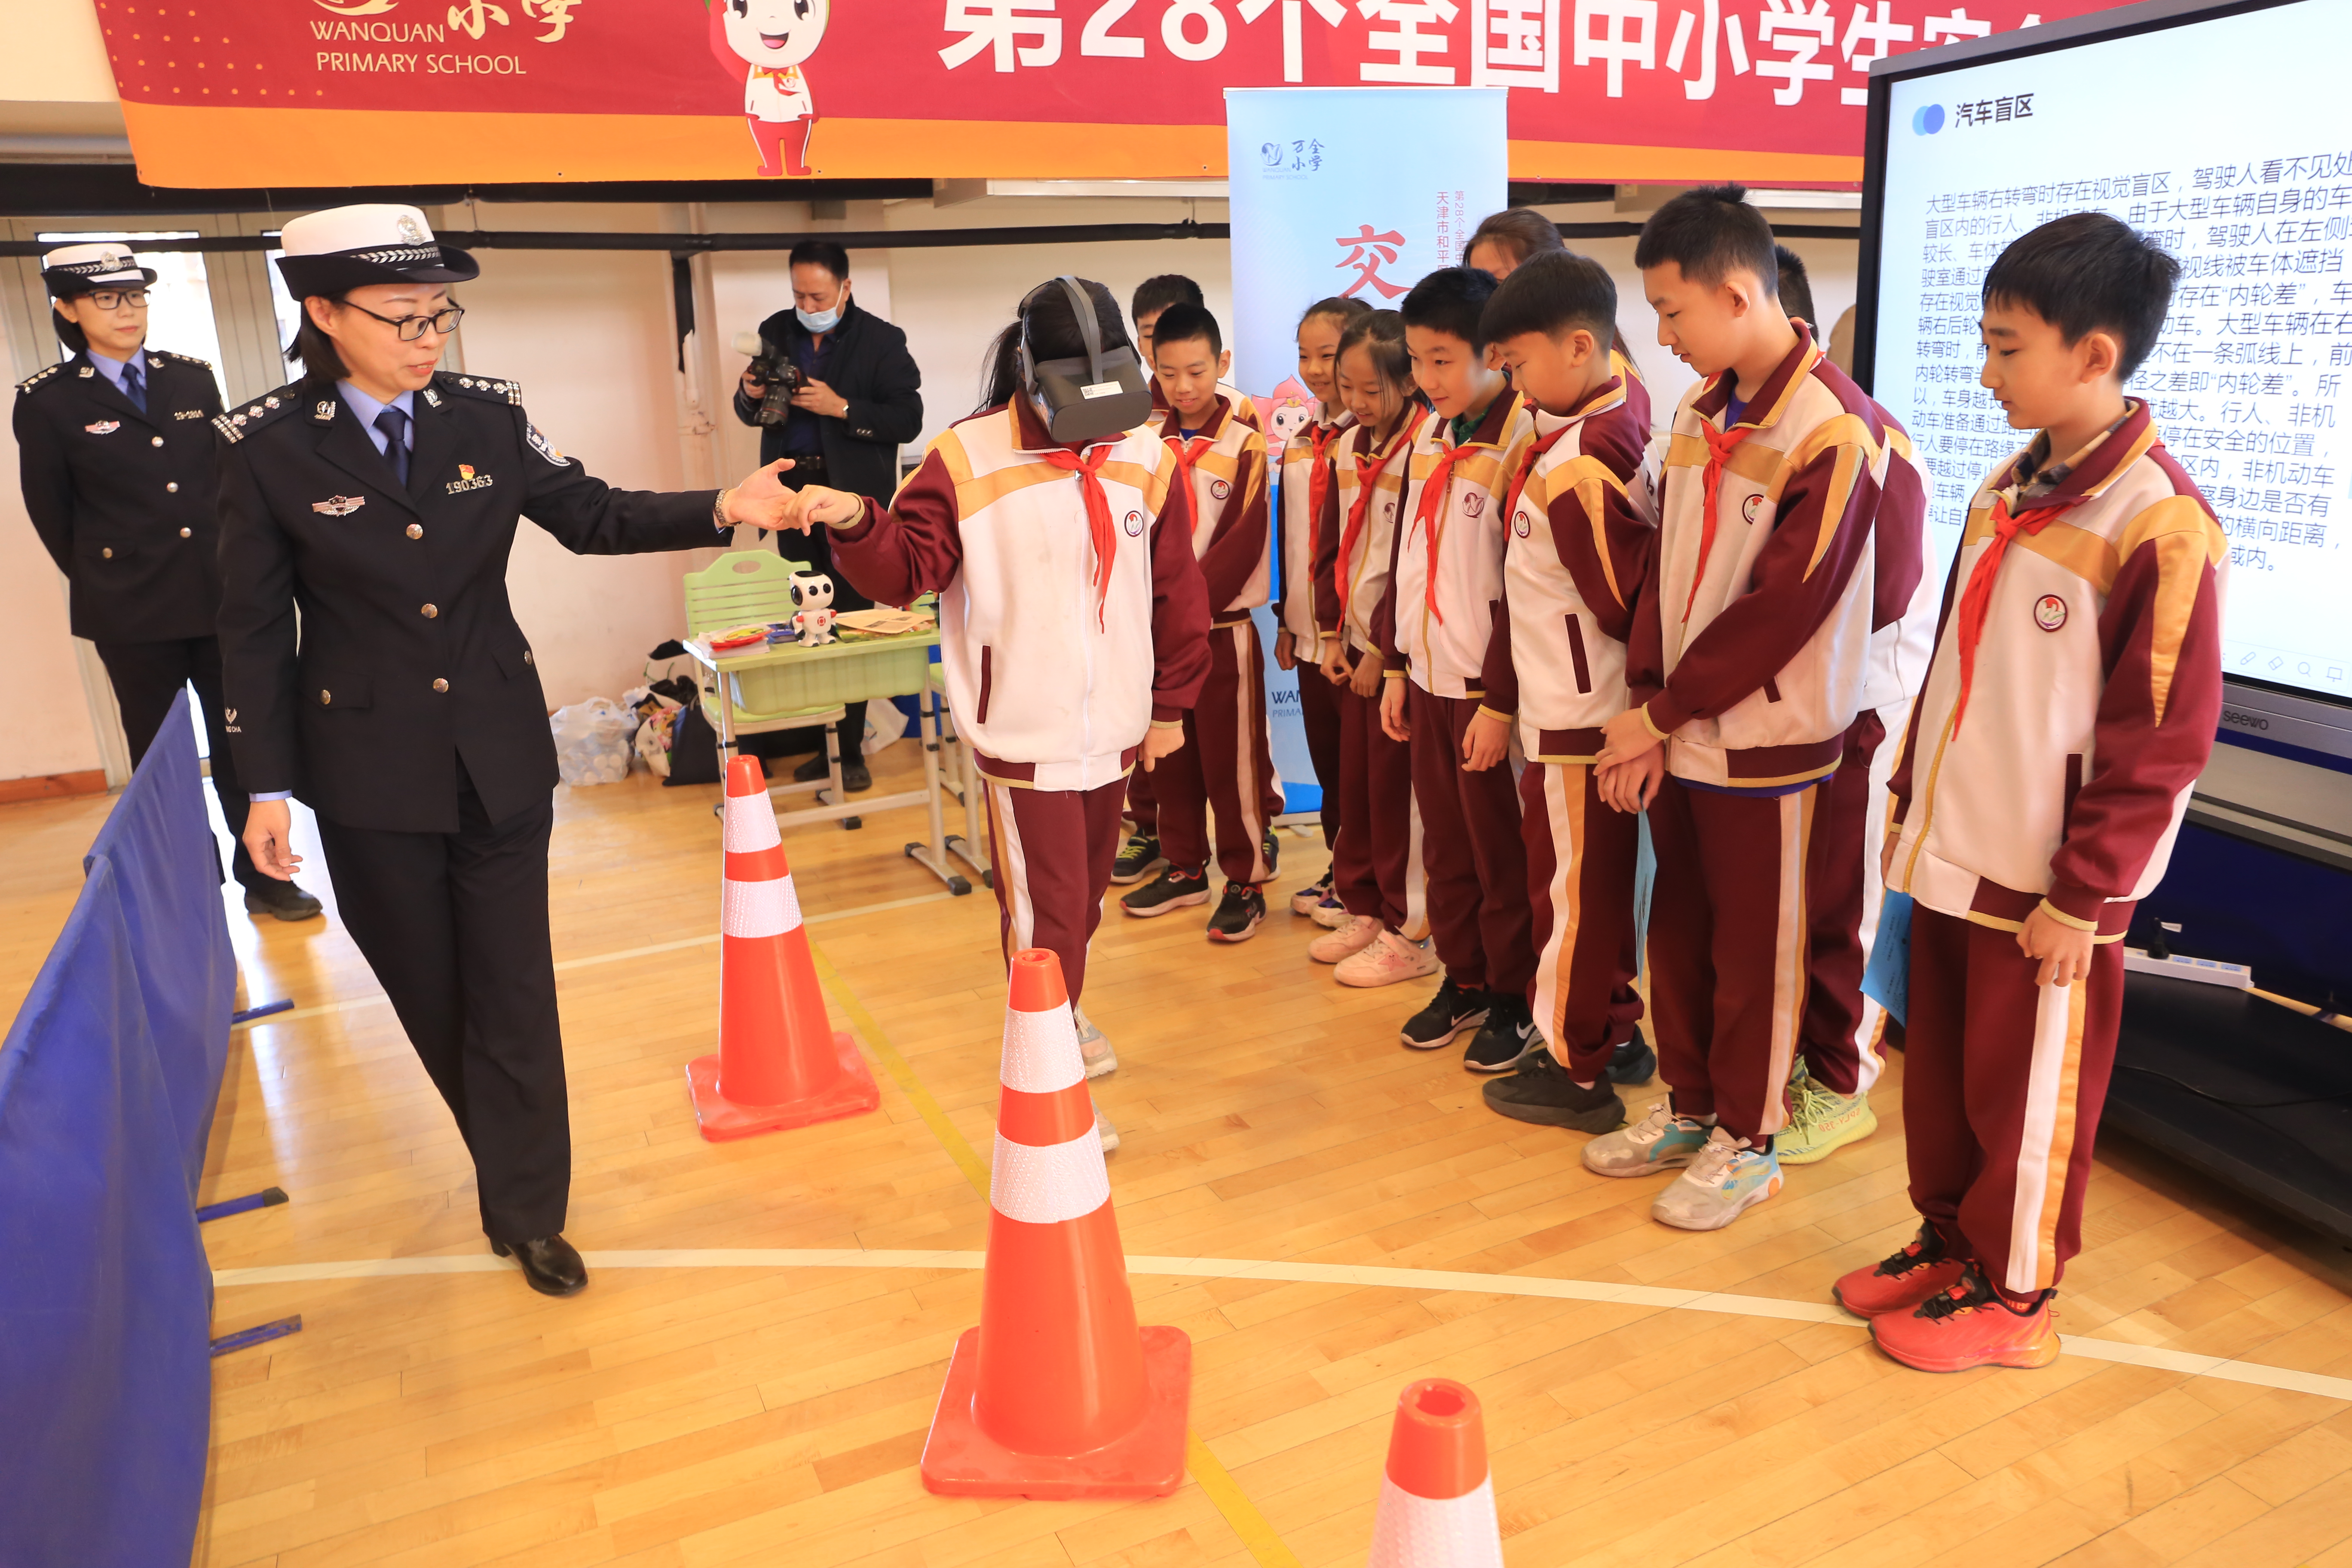 天津和平区万全小学:引导学生做自己的首席安全官